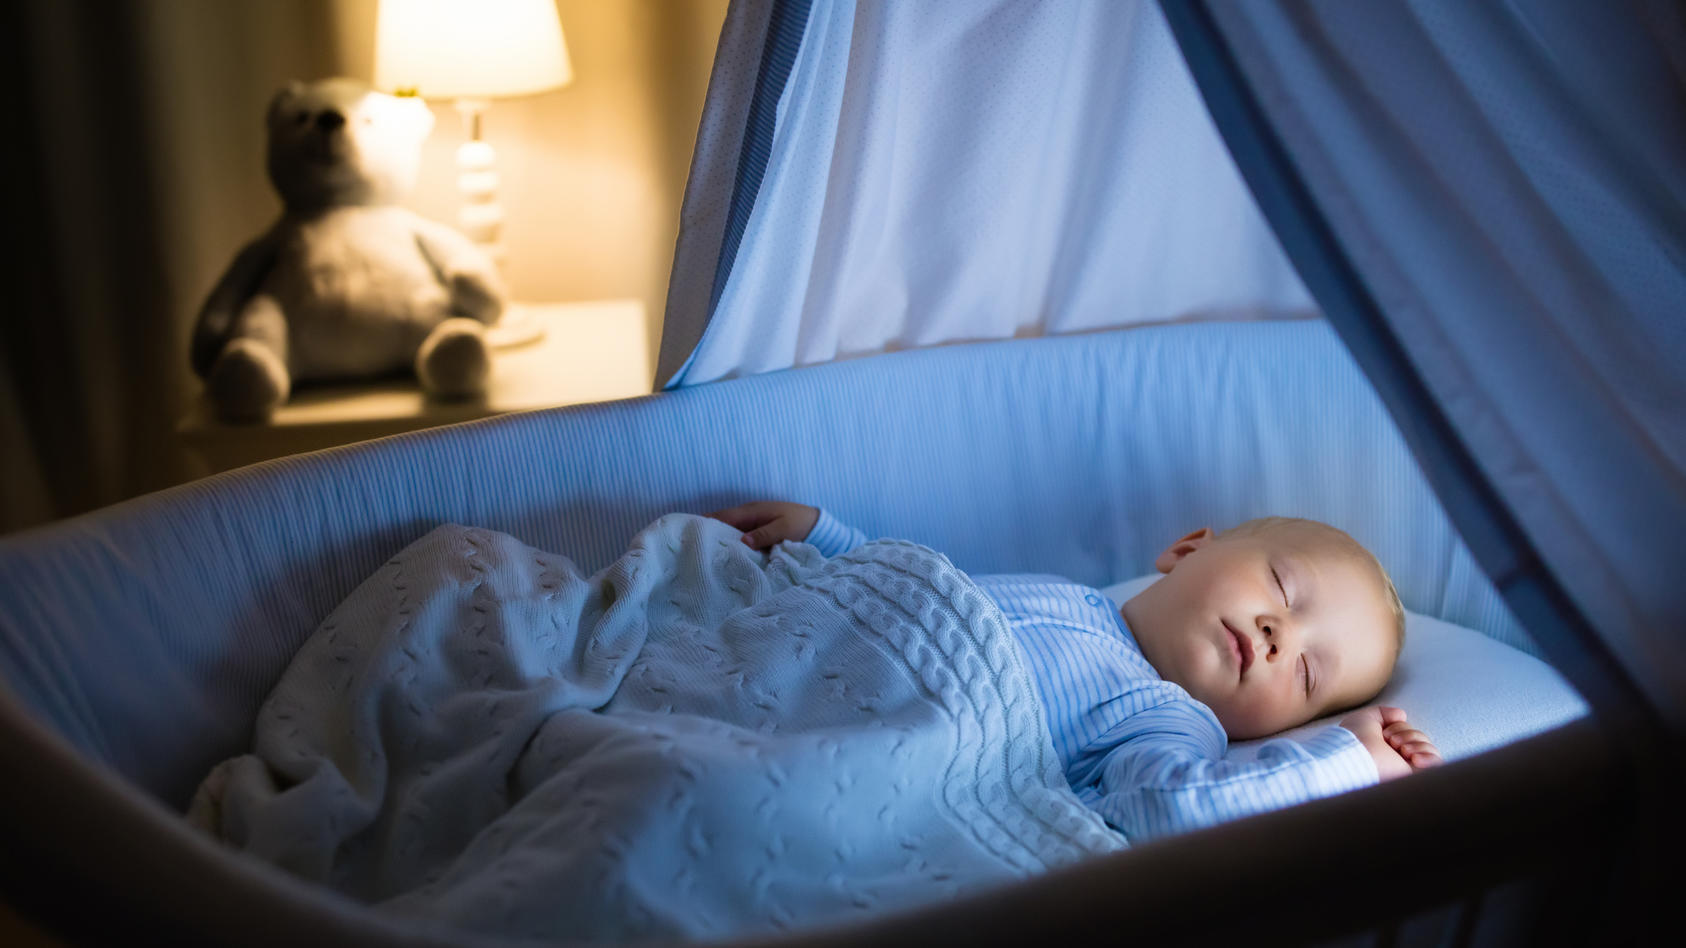 Die sanft schaukelnde Babywiege bietet besonders für kleine Babys ein beruhigendes Bettchen für einen geruhsamen Schlaf. Welche Vorteile Babywiegen noch mit sich bringen und was Sie bei der Auswahl der Wiege beachten sollten, erfahren Sie hier